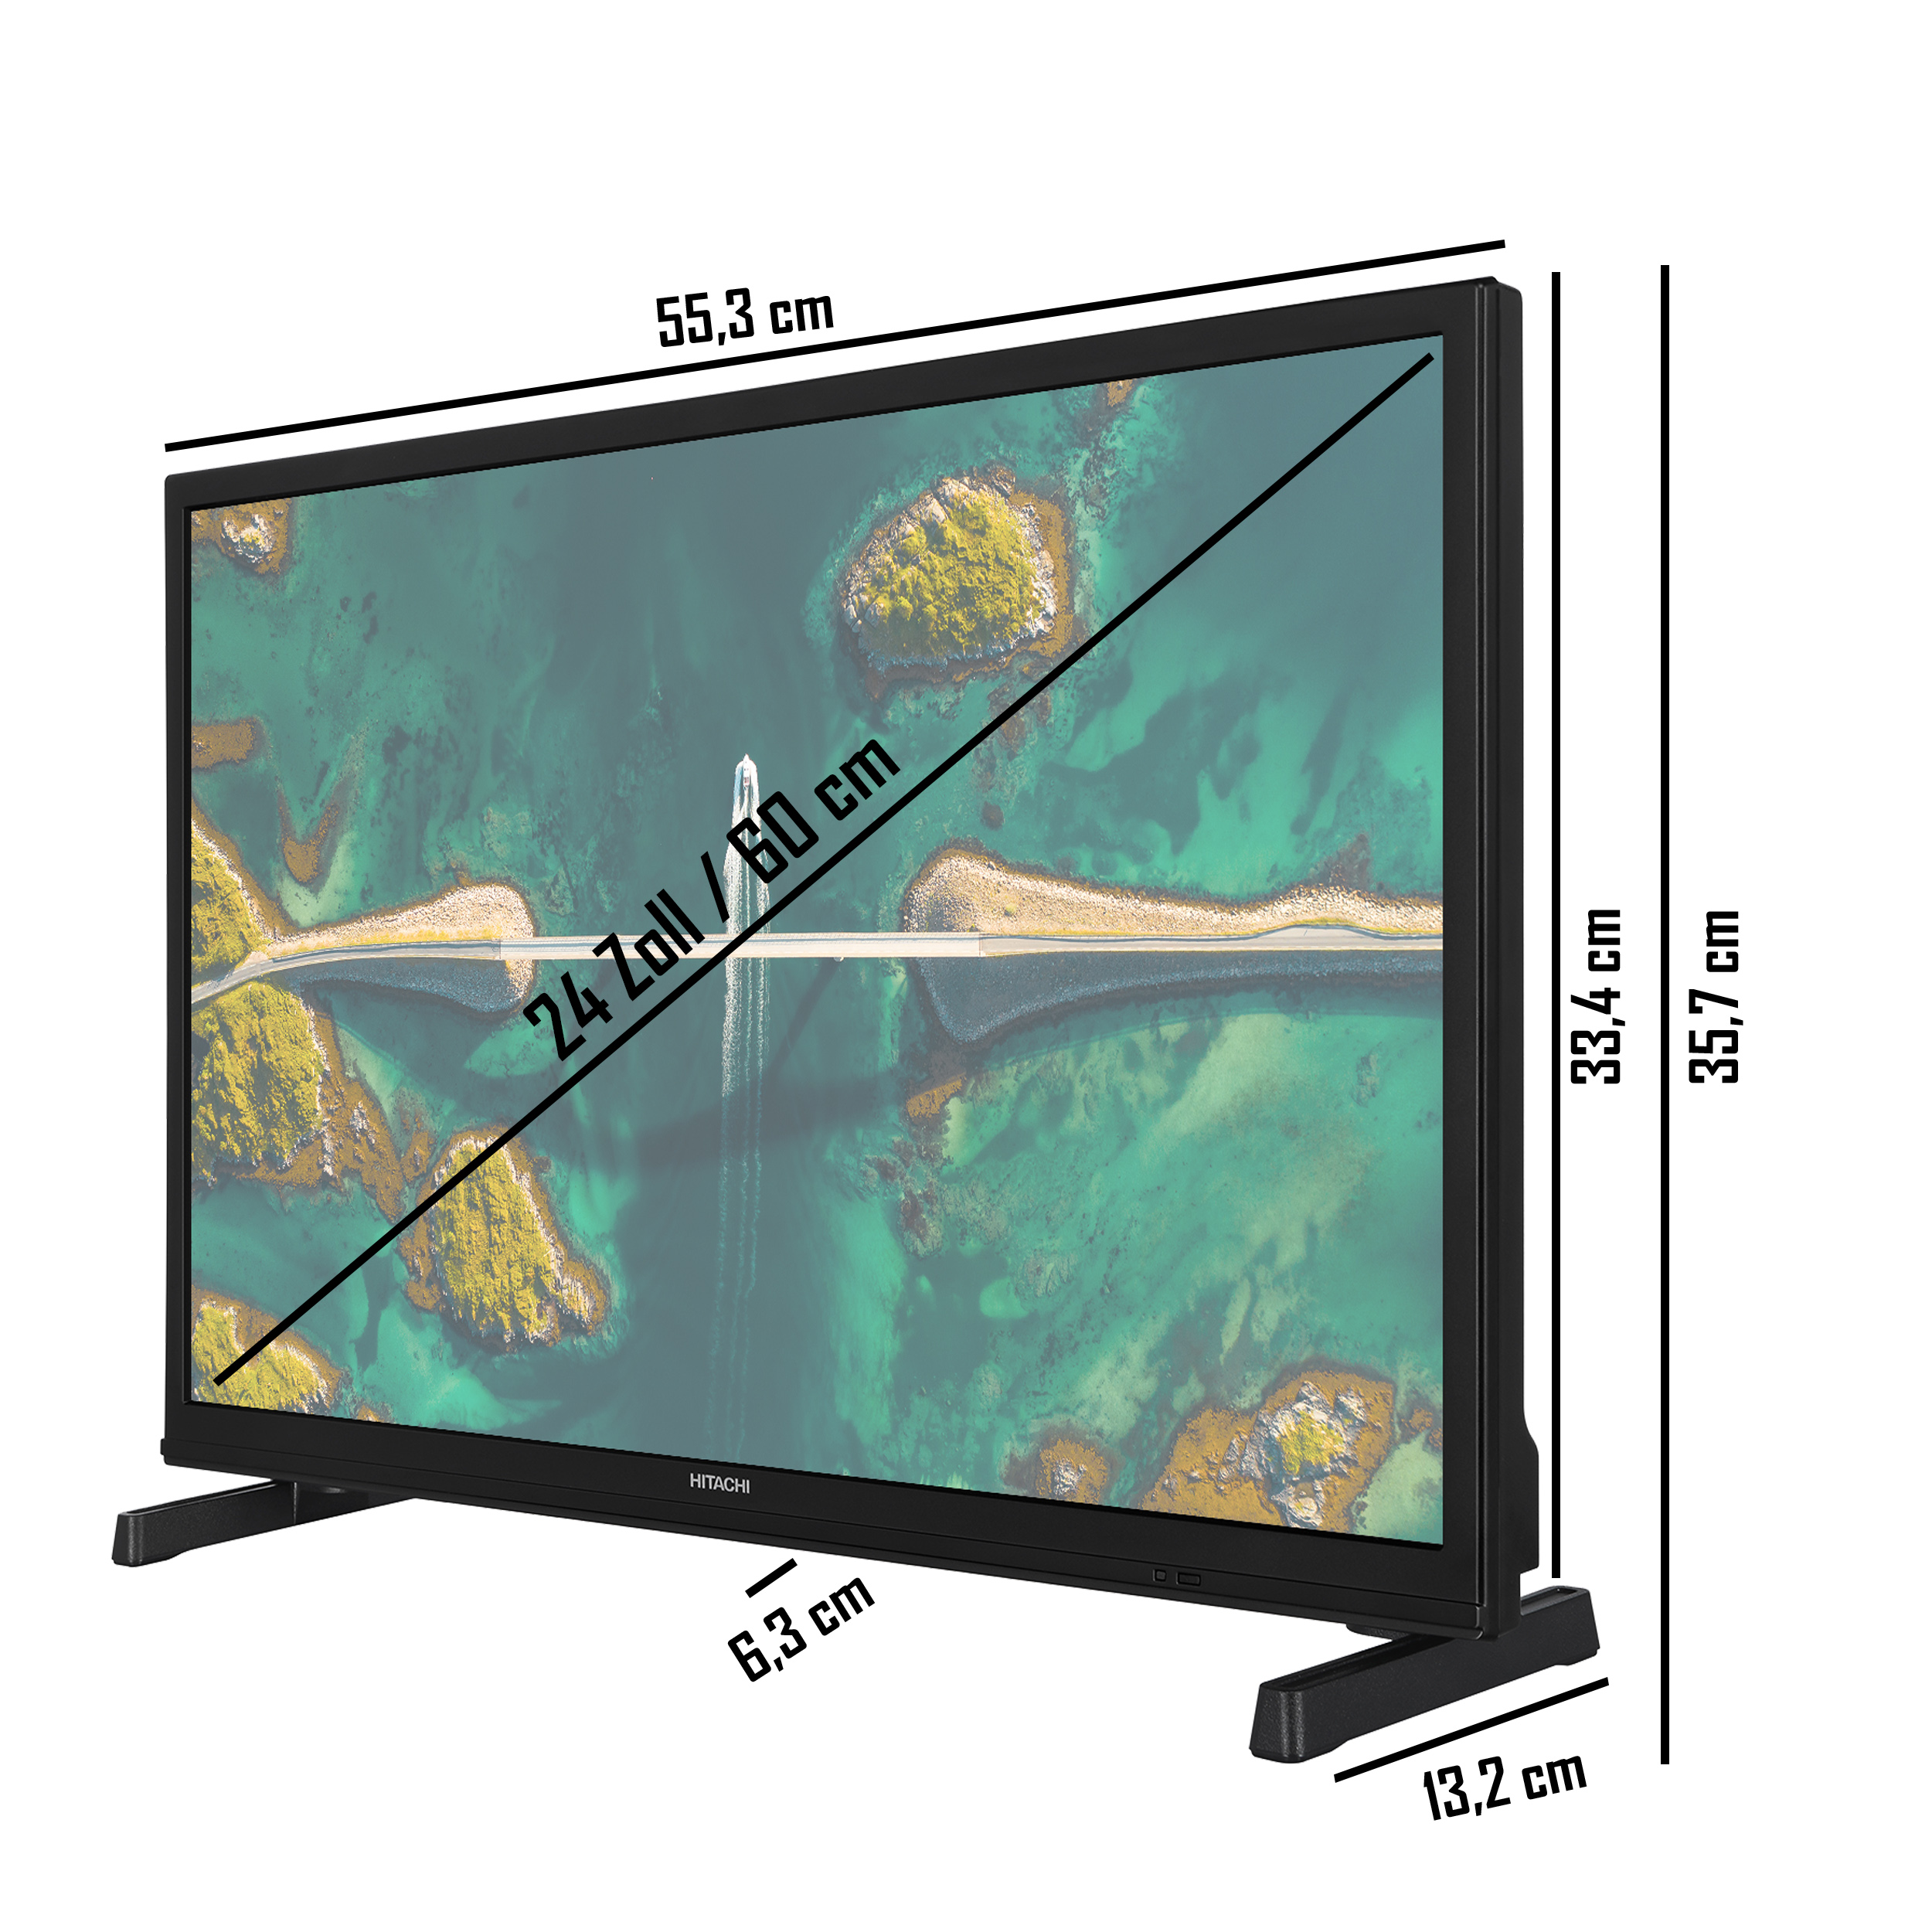 LED TV / HD-ready, HITACHI H24E2305V 24 cm, Zoll TV) (Flat, 60 SMART